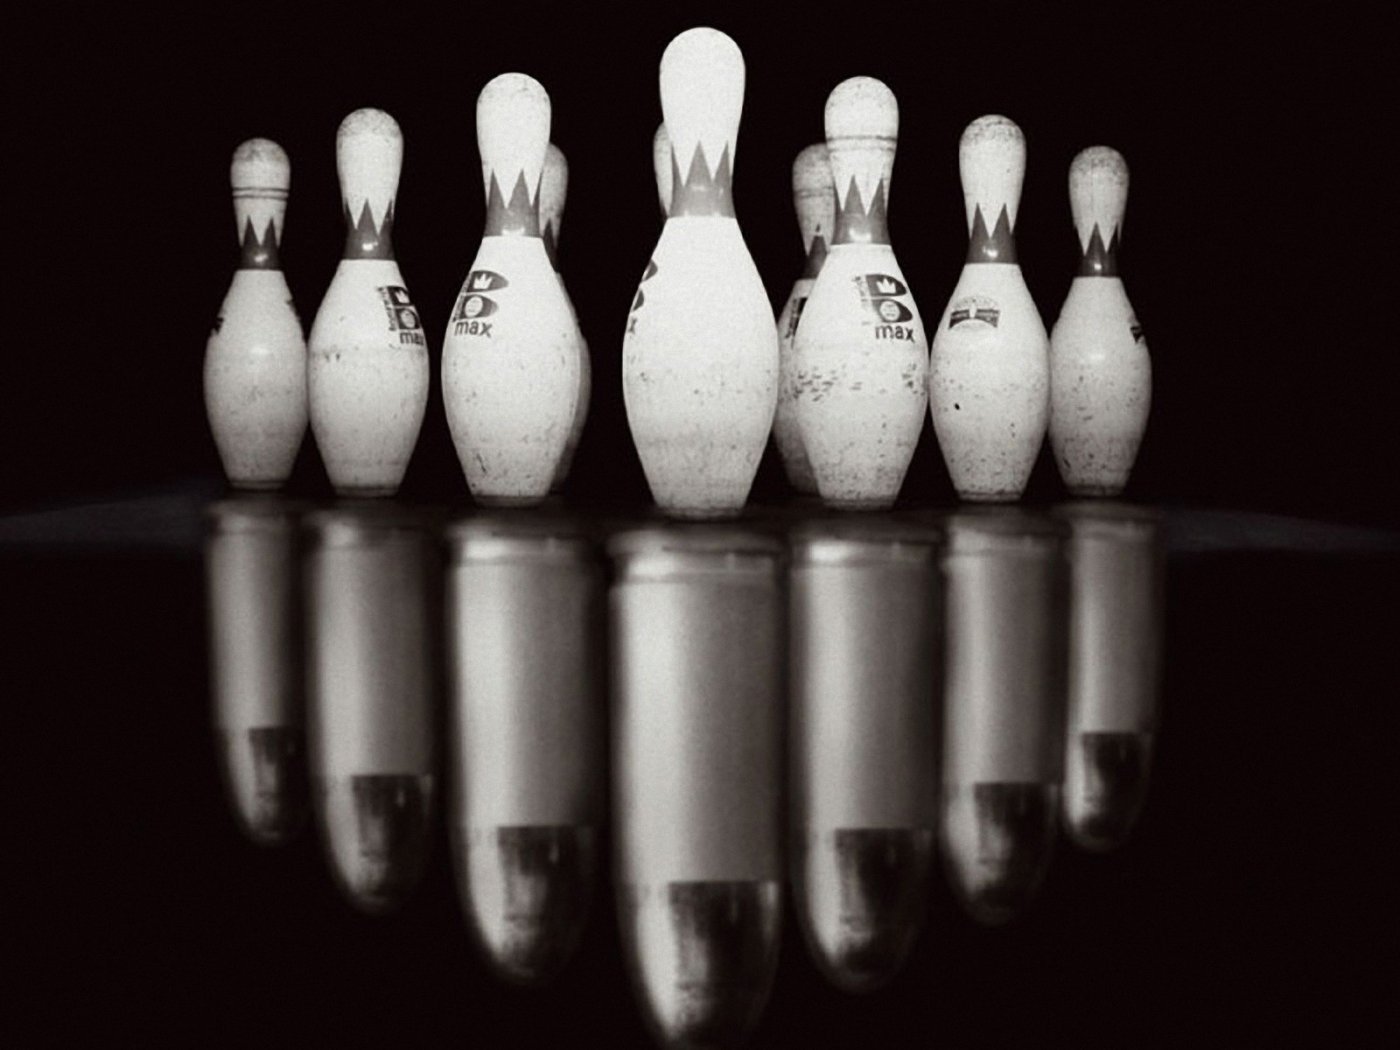 bowling tapete,bowling,bowlingausrüstung,bowling mit zehn kegeln,stillleben fotografie,kegelsport